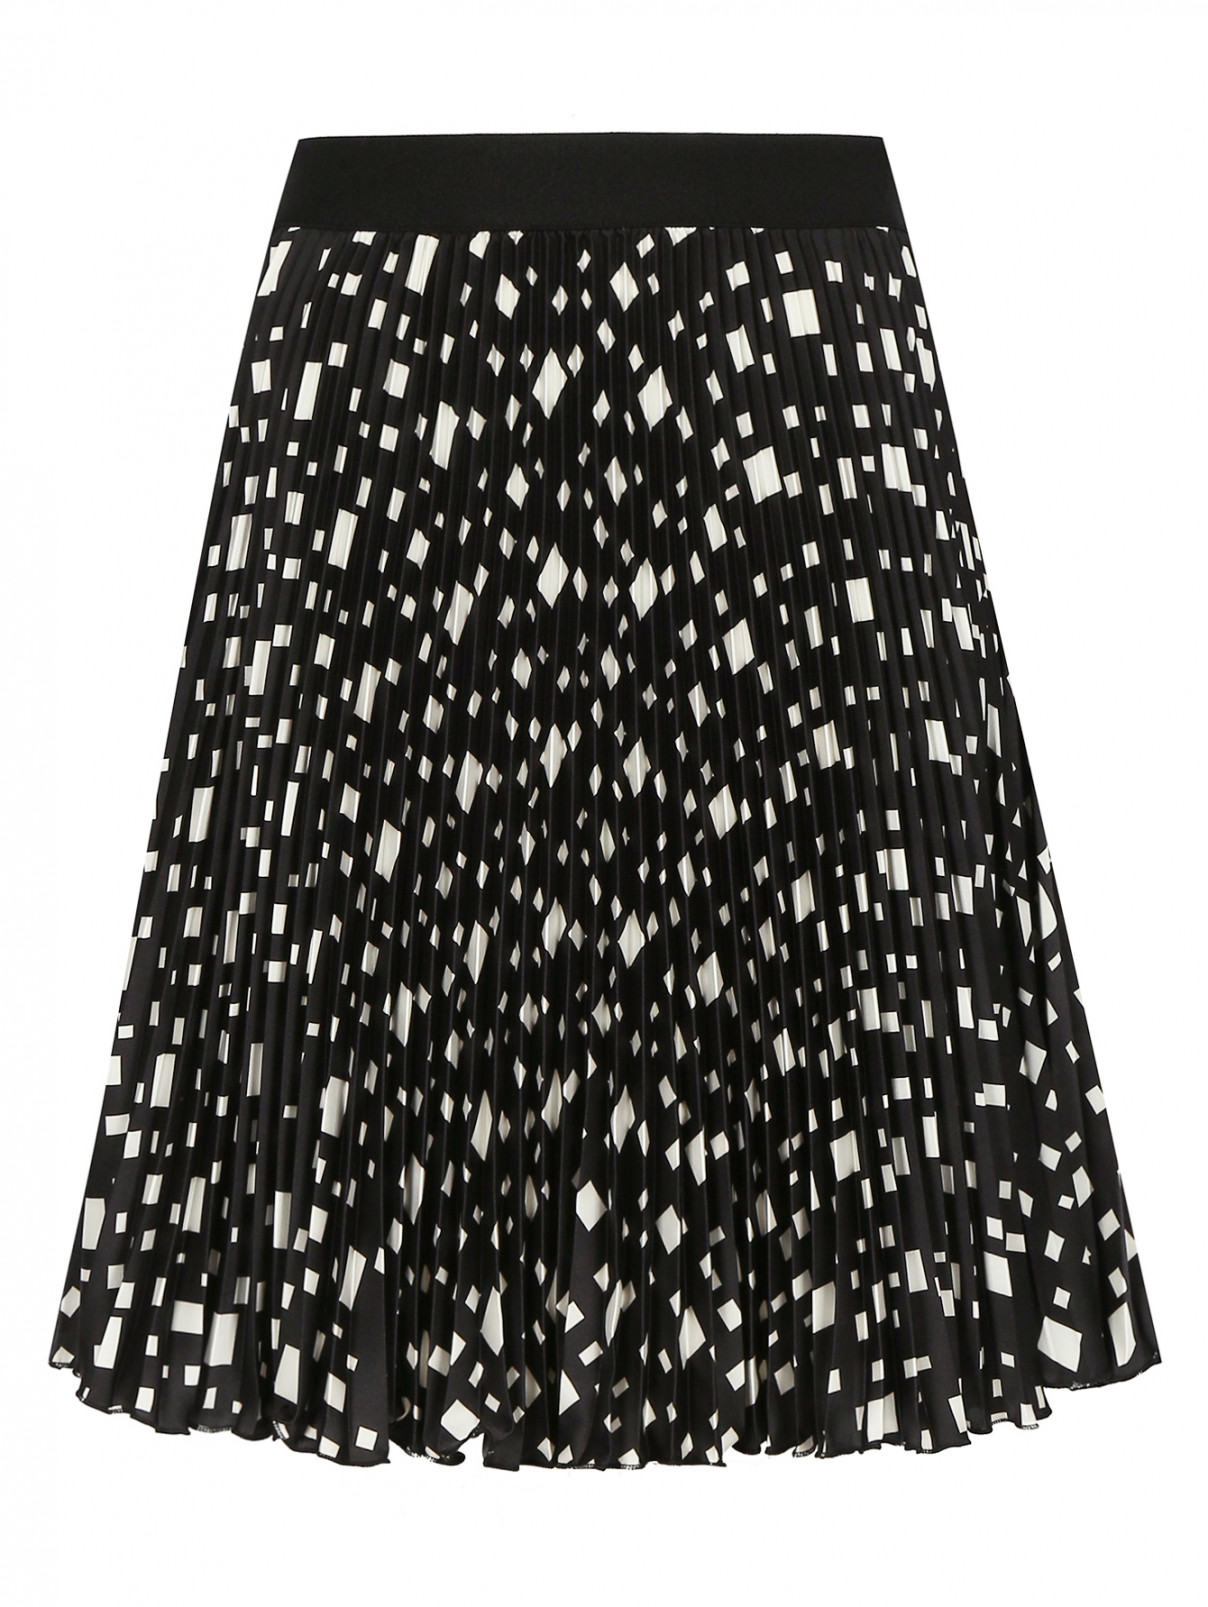 Гофрированная юбка-мини с узором Isola Marras  –  Общий вид  – Цвет:  Узор